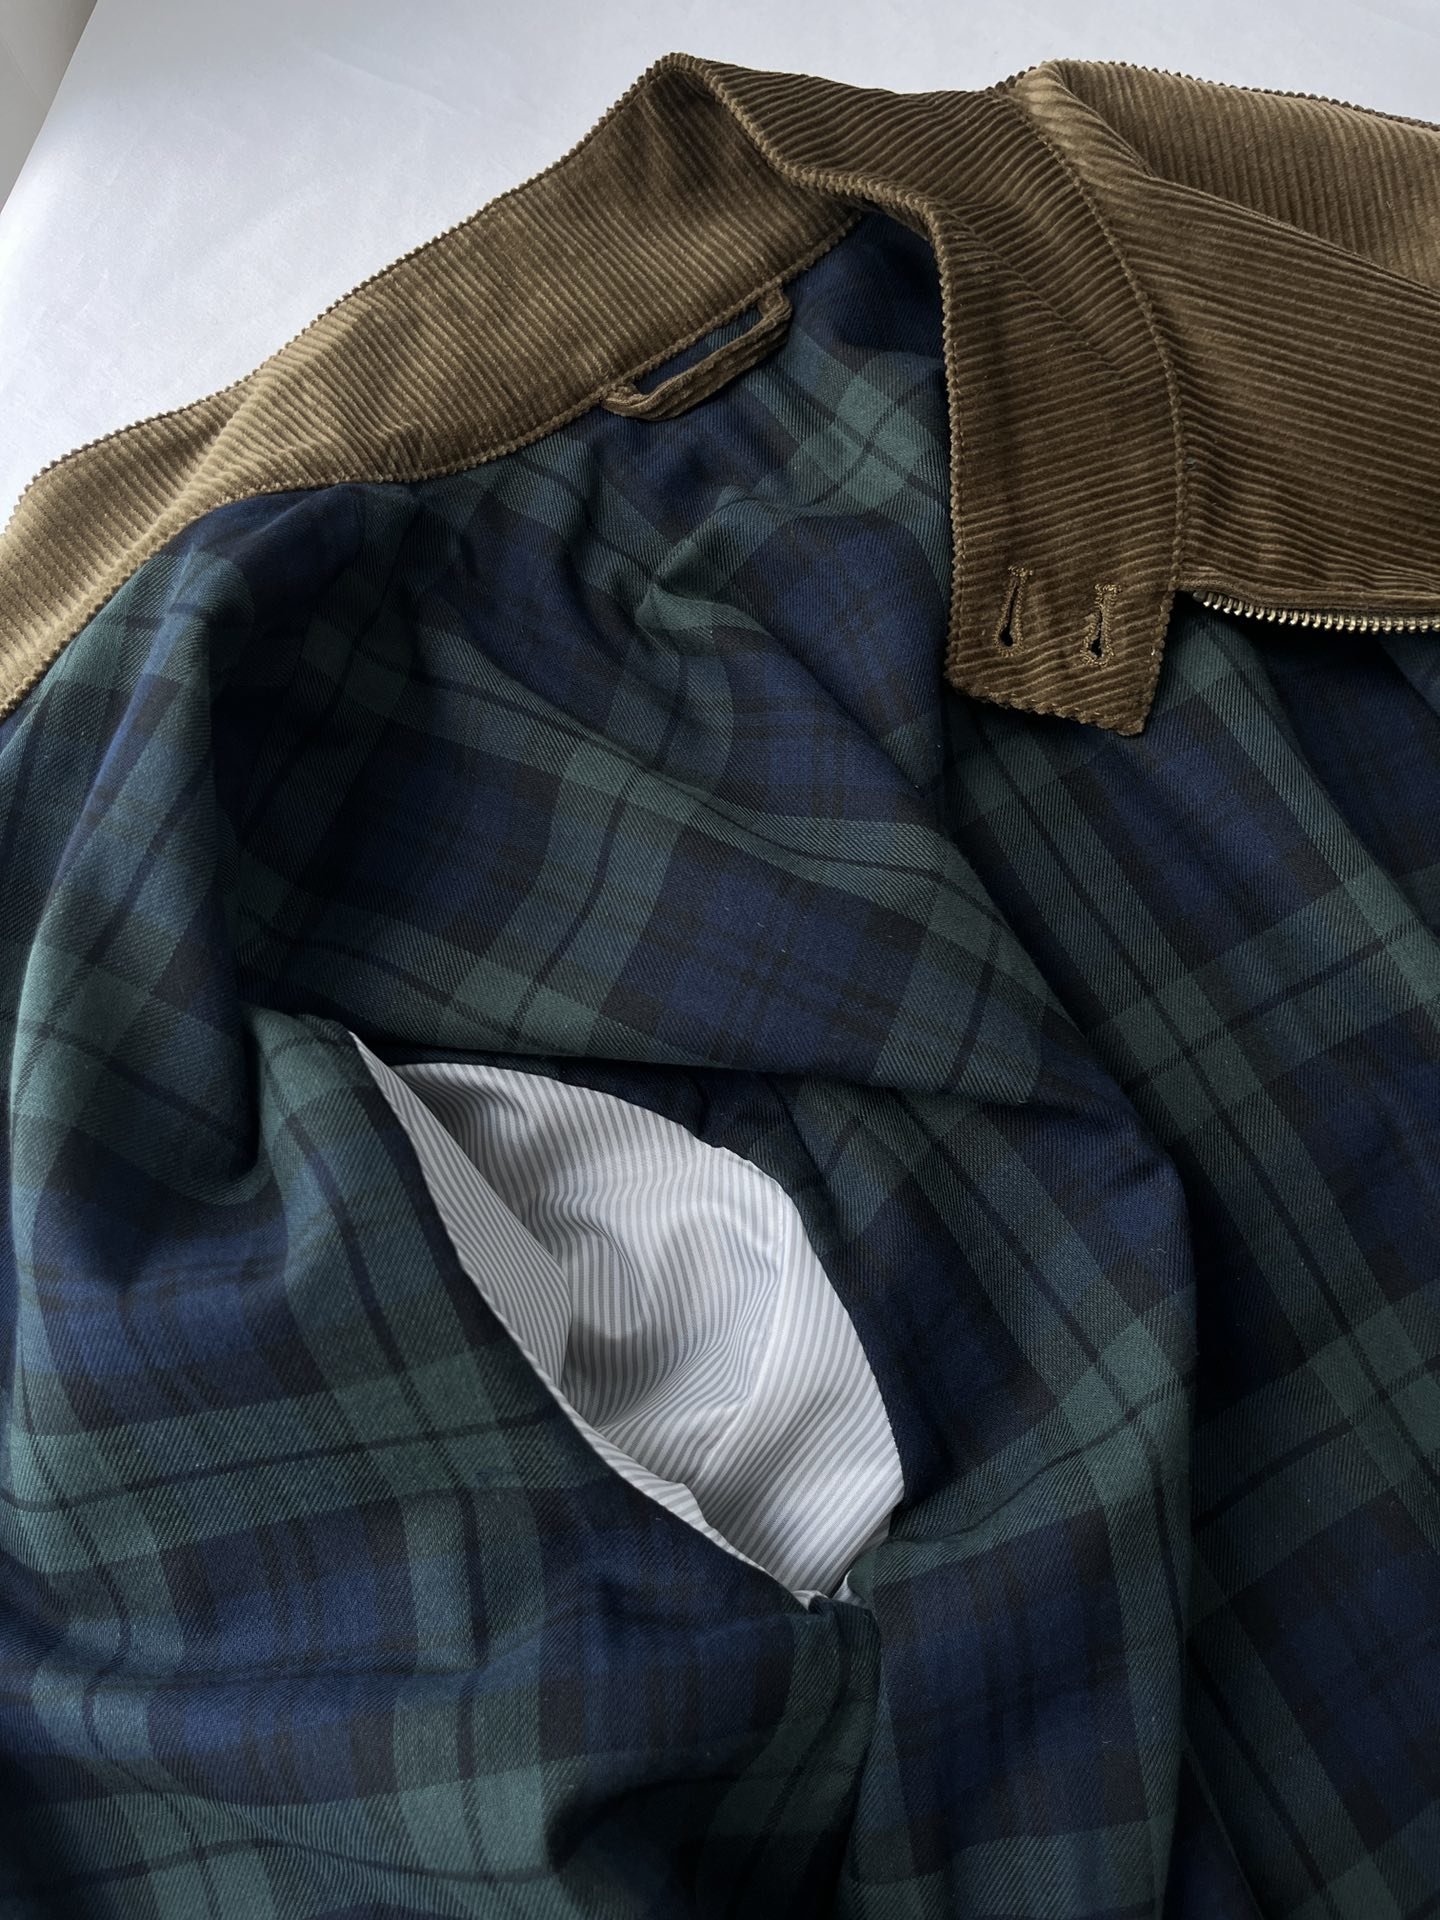 拉夫23秋冬新款灯芯绒夹克外套高定版谁穿谁好看的美式夹克不会像常规夹克一样厚重进口灯芯绒材质很普通的面料